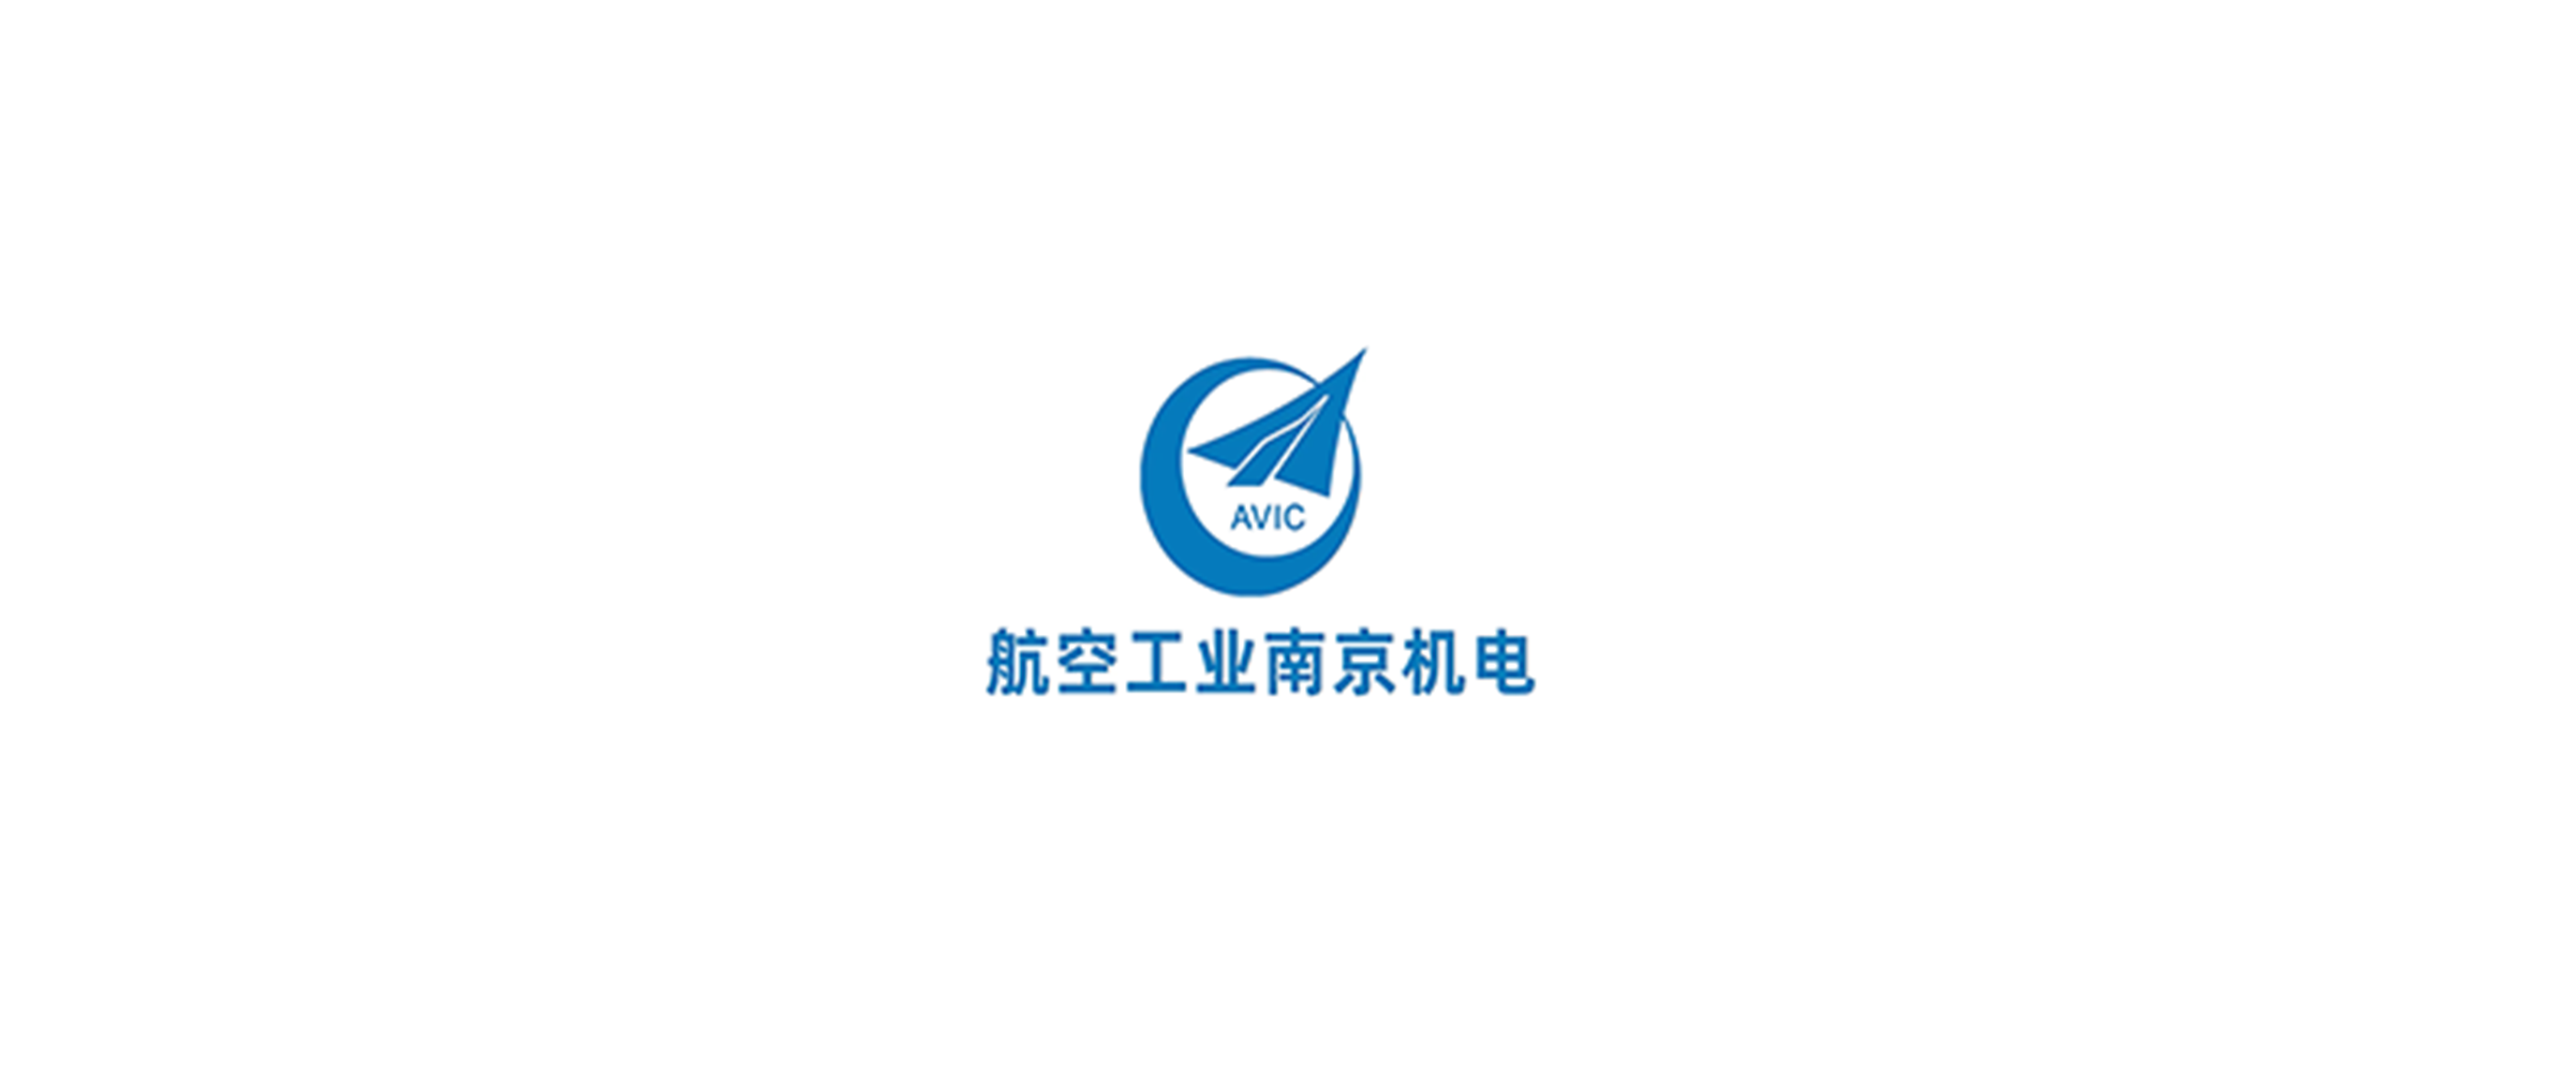 中国航空工业集团金城南京机电液压工程研究中心